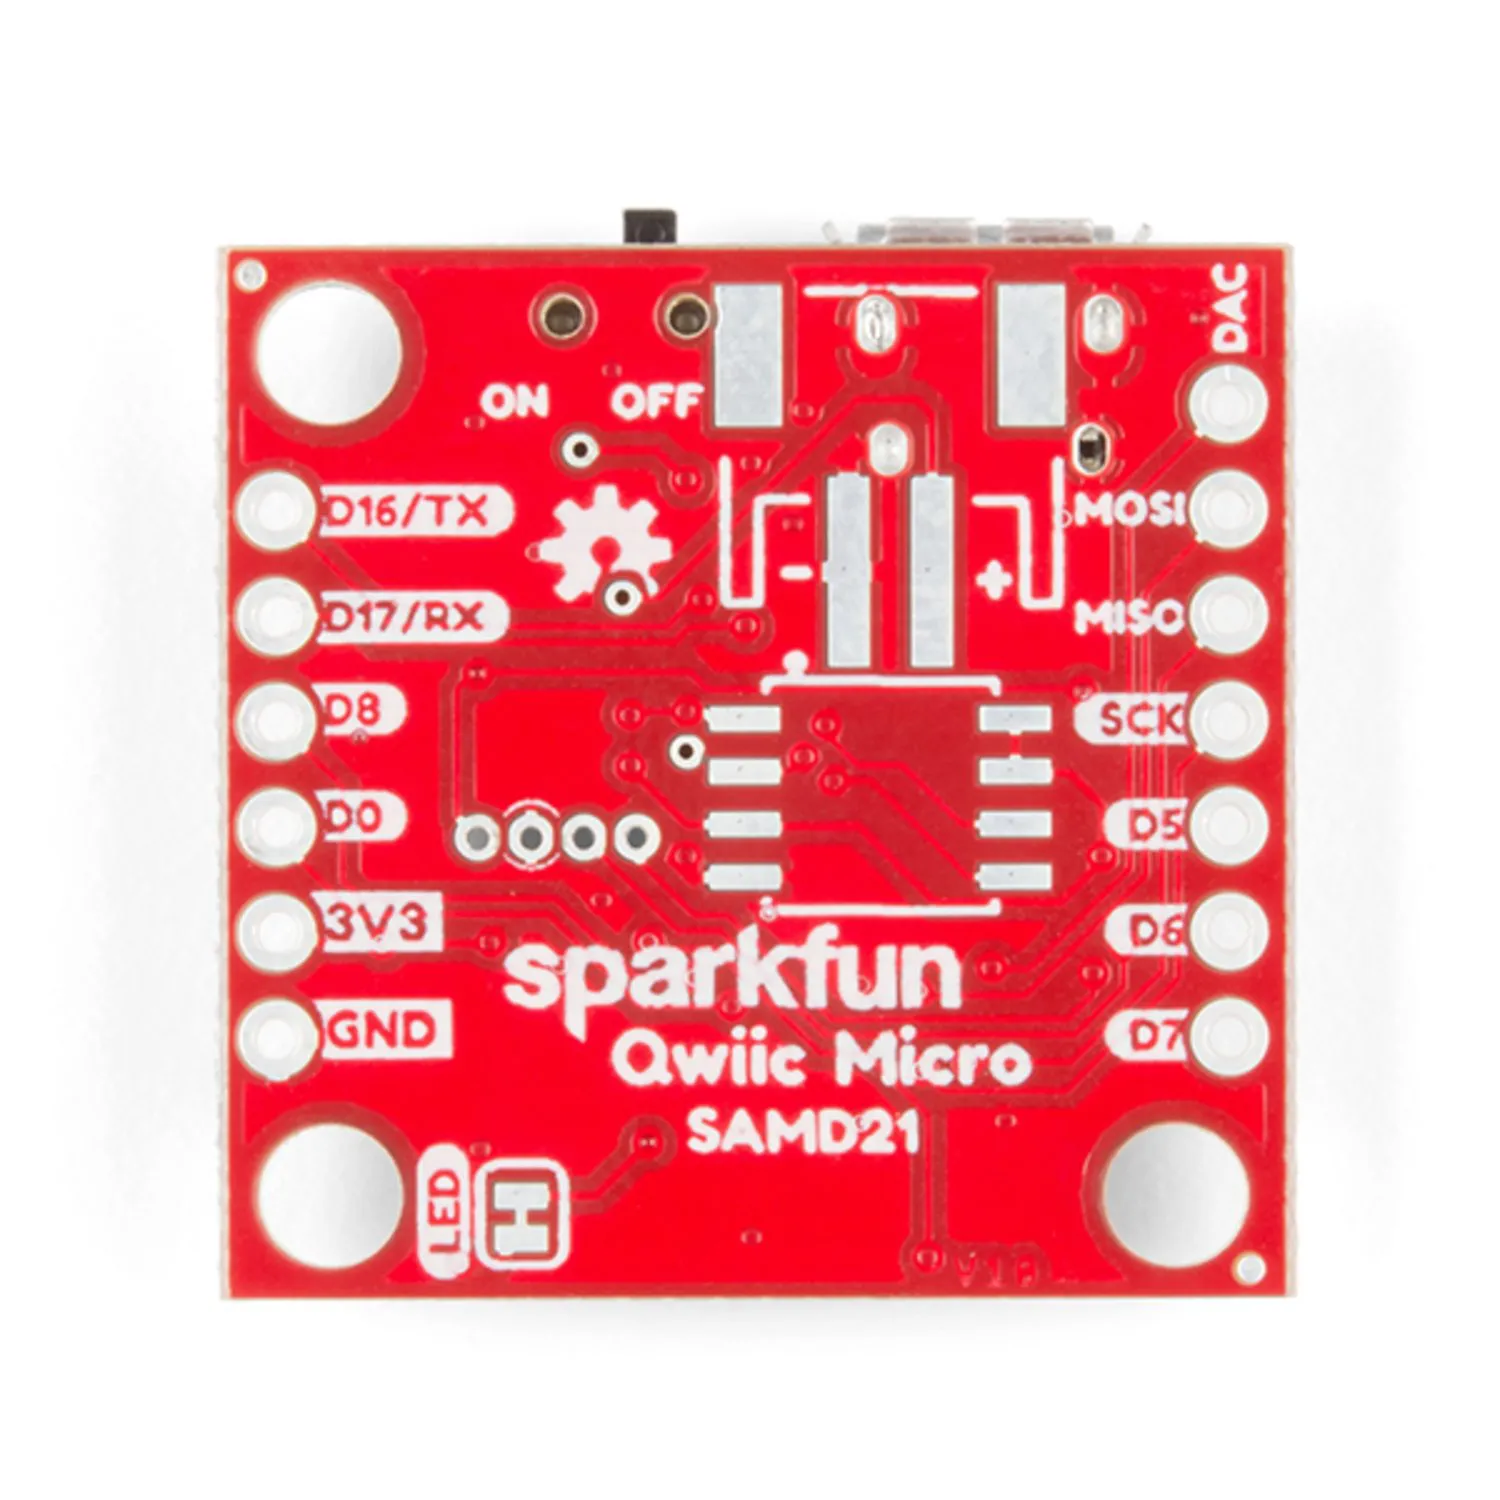 Photo of SparkFun Qwiic Micro - SAMD21 Development Board